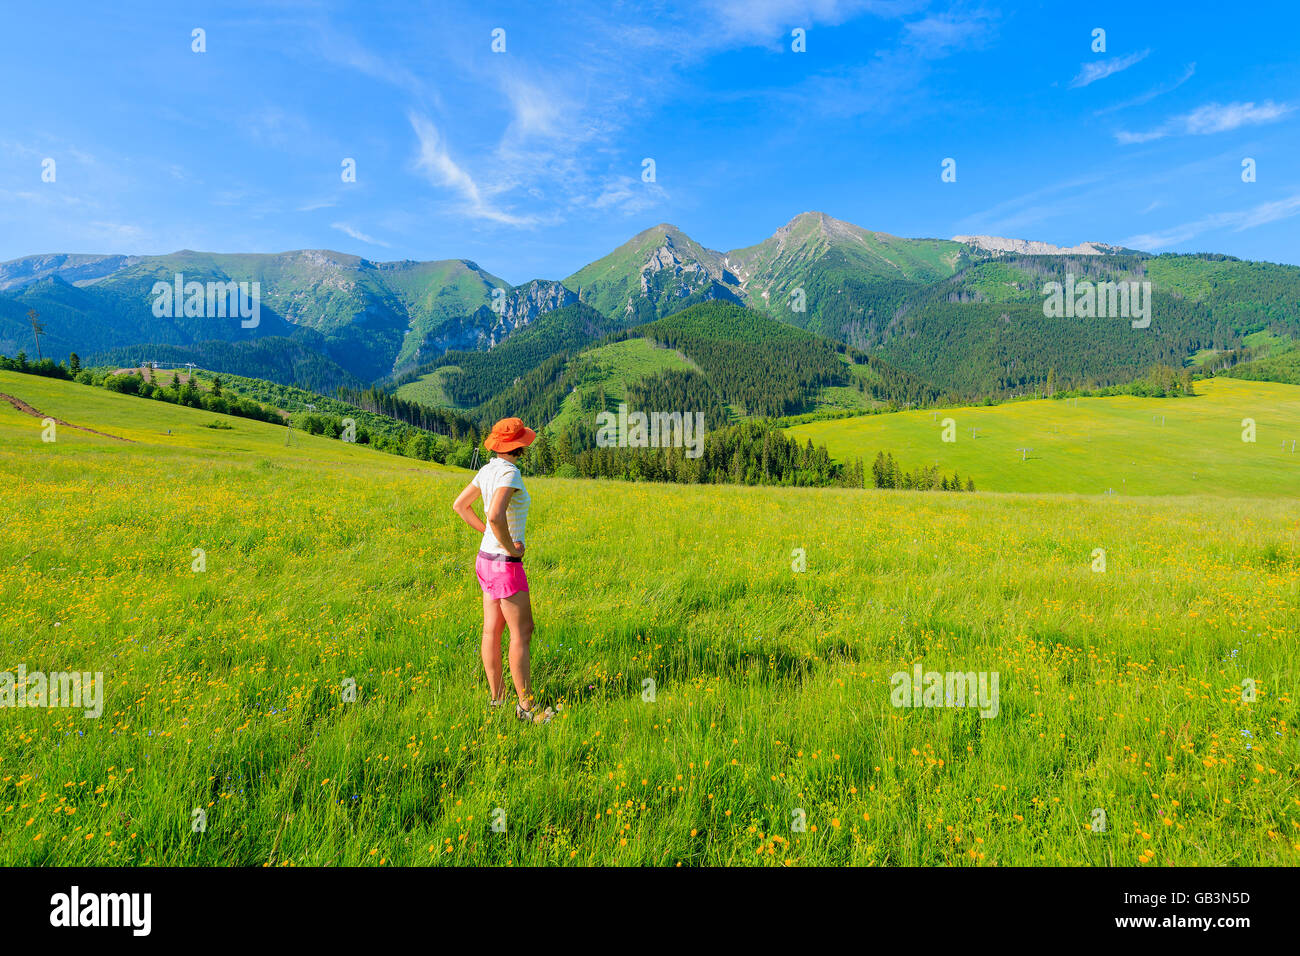 Jeune femme debout sur touristiques pré vert avec des fleurs jaunes et à l'été au paysage de montagnes Tatras, Slovaquie Banque D'Images